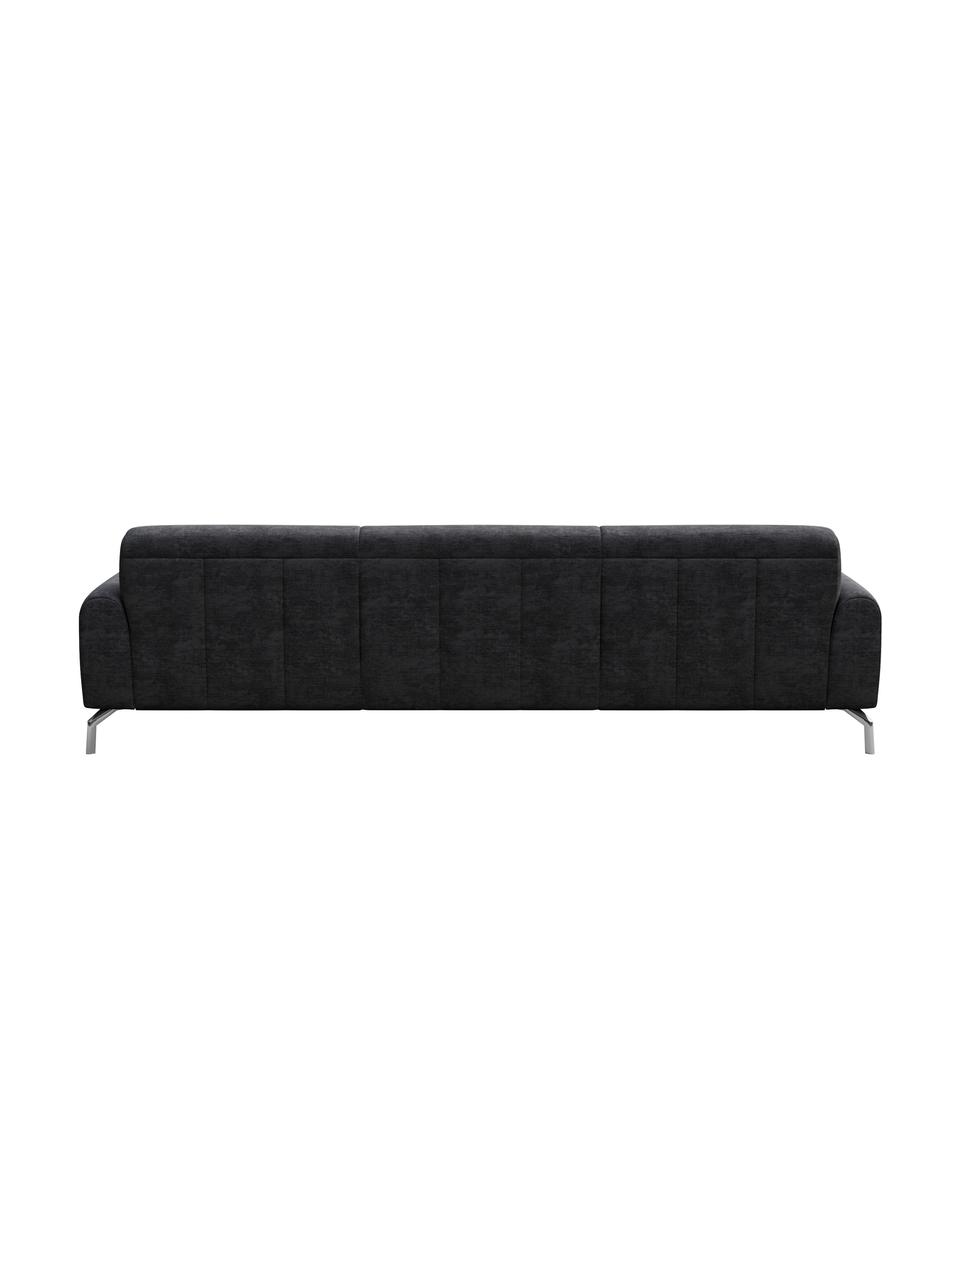 Sofa z systemem Zero-Spot Puzo (3-osobowa), Tapicerka: 100% poliester z Zero Spo, Nogi: metal lakierowany, Ciemny szary, S 240 x G 84 cm